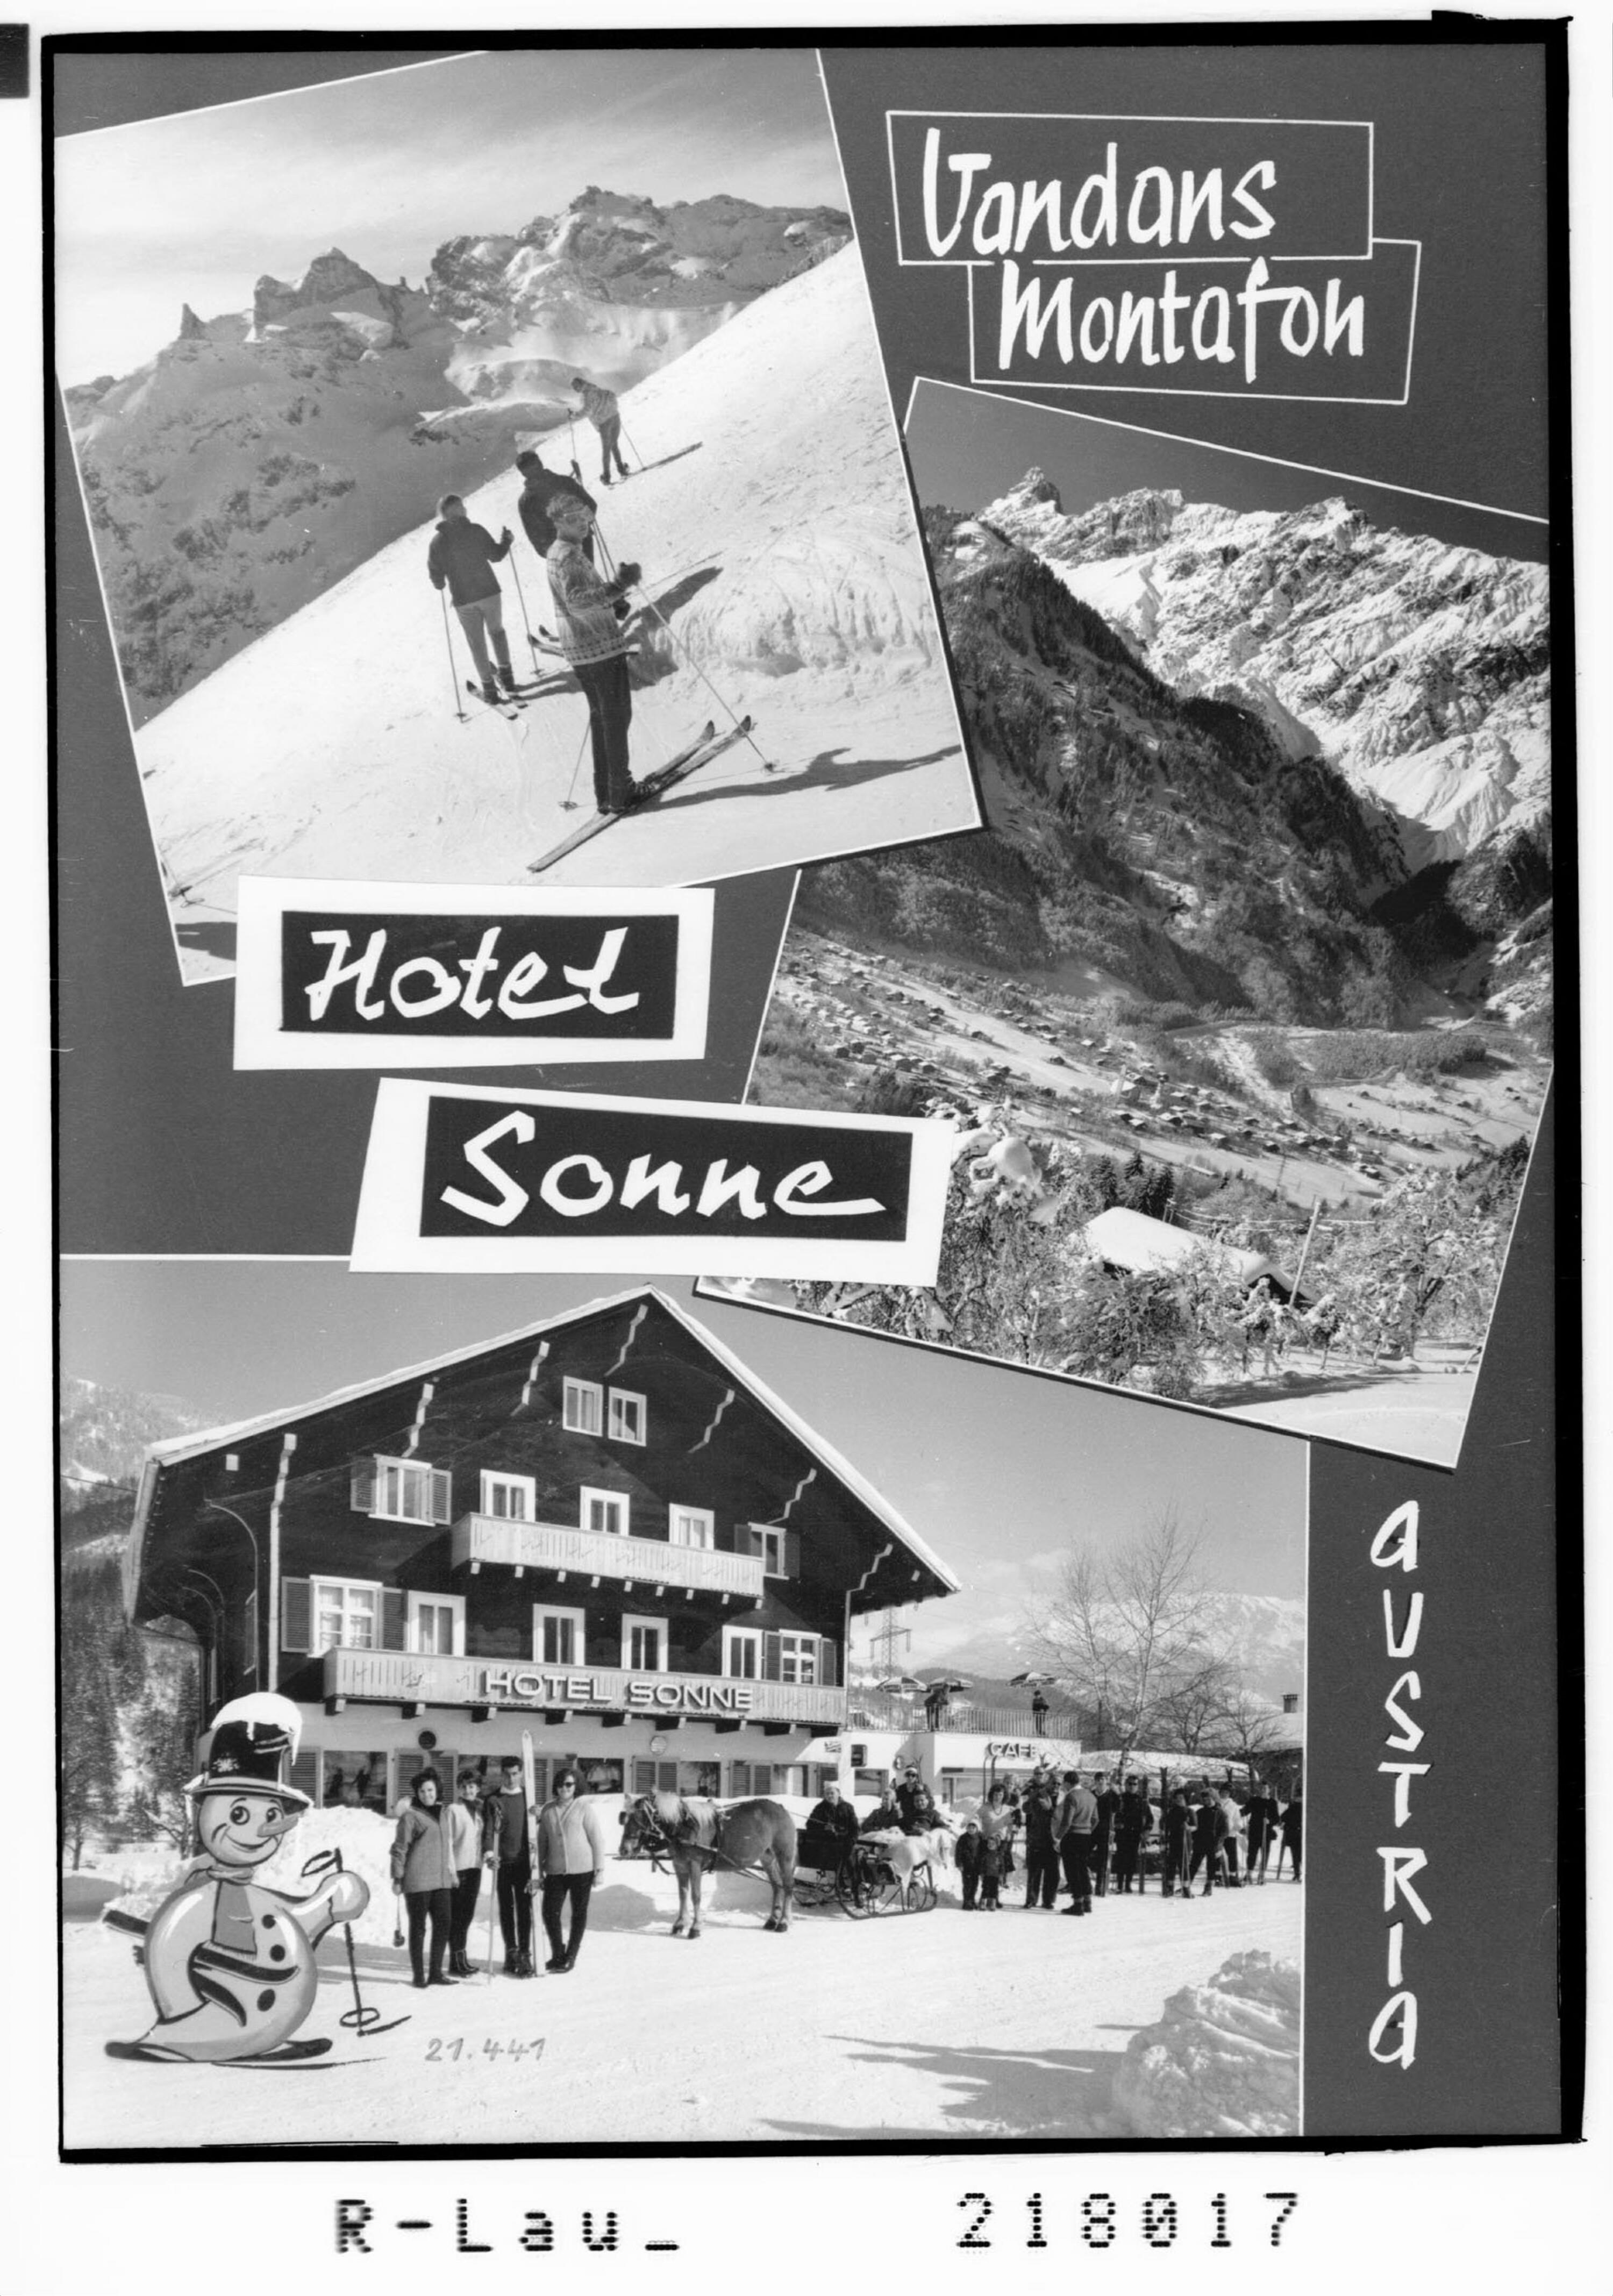 Vandans Montafon Hotel Sonne / Austria></div>


    <hr>
    <div class=